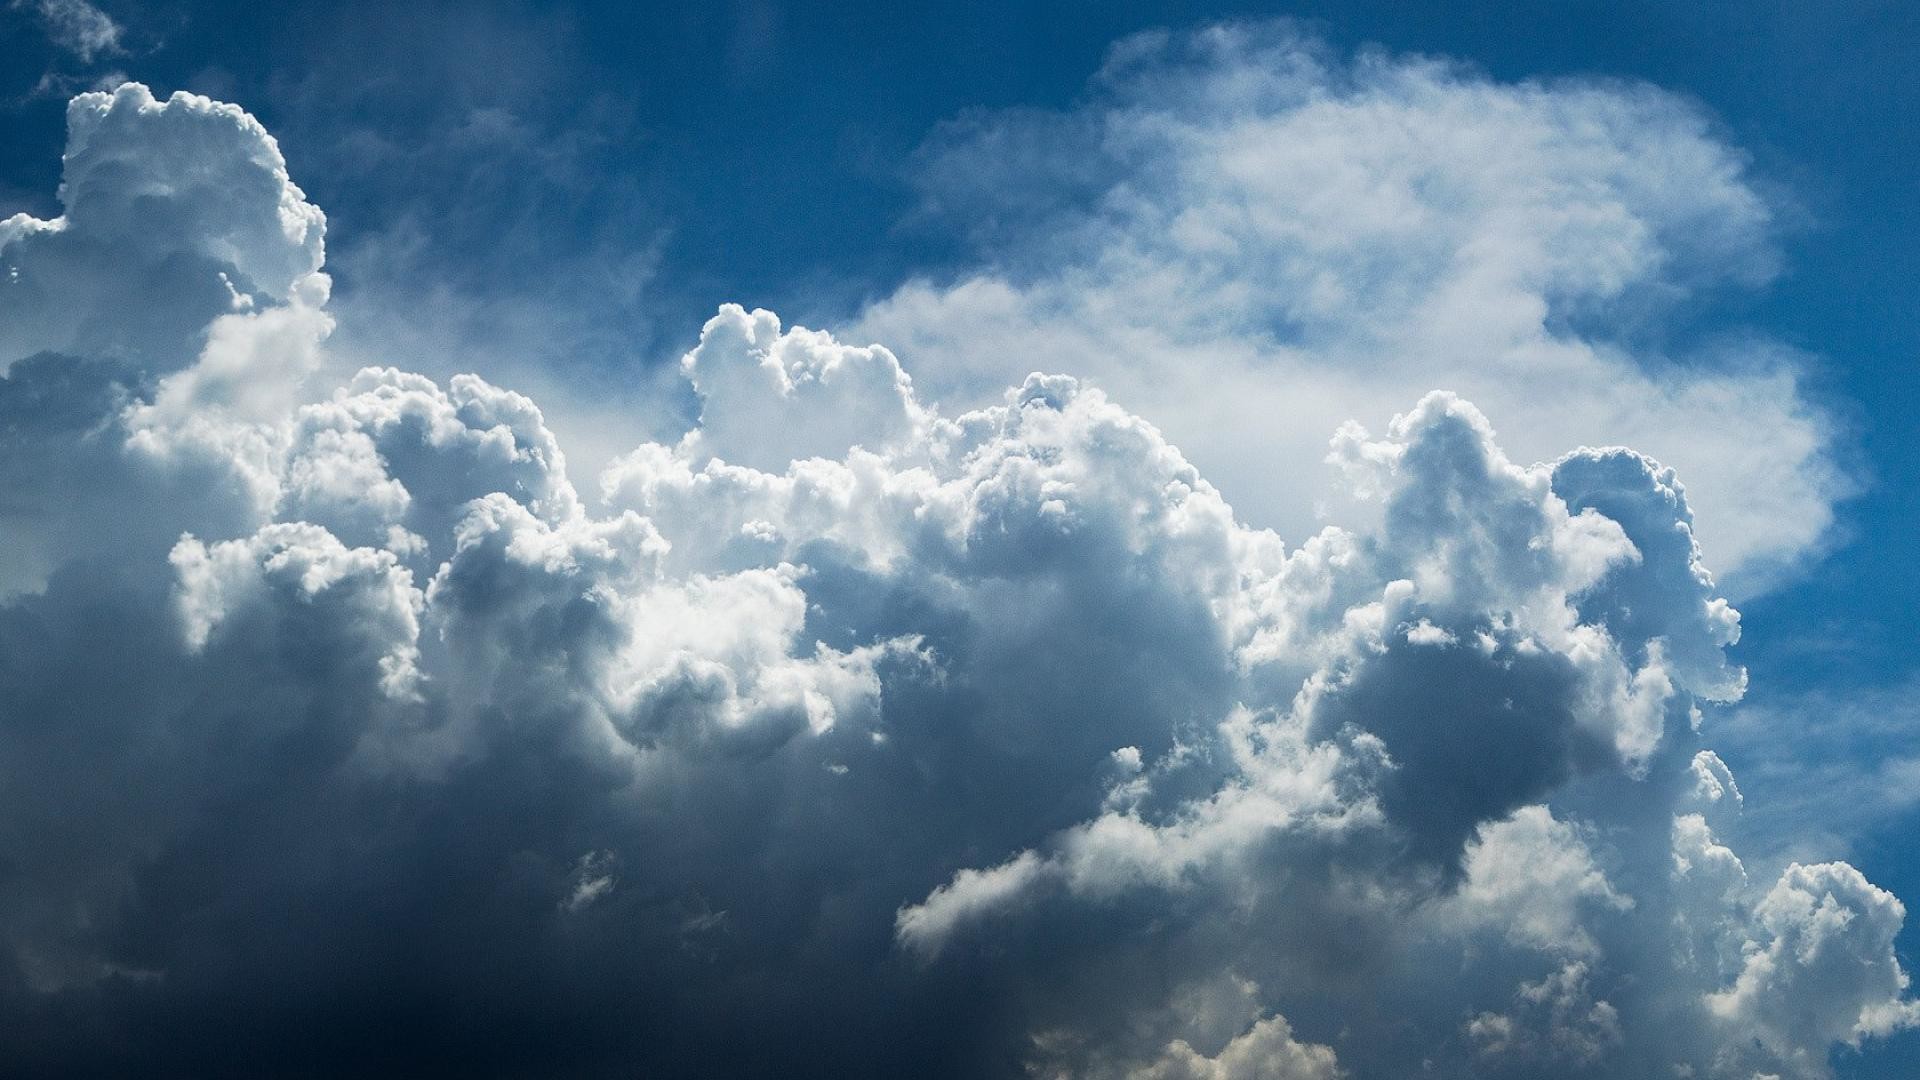 sky-clouds-sun-wallpaper-2.jpg (1920Ã1080) | NAND245 Infiniement grand |  Pinterest | Hd backgrounds, Cloud and Blue sky clouds